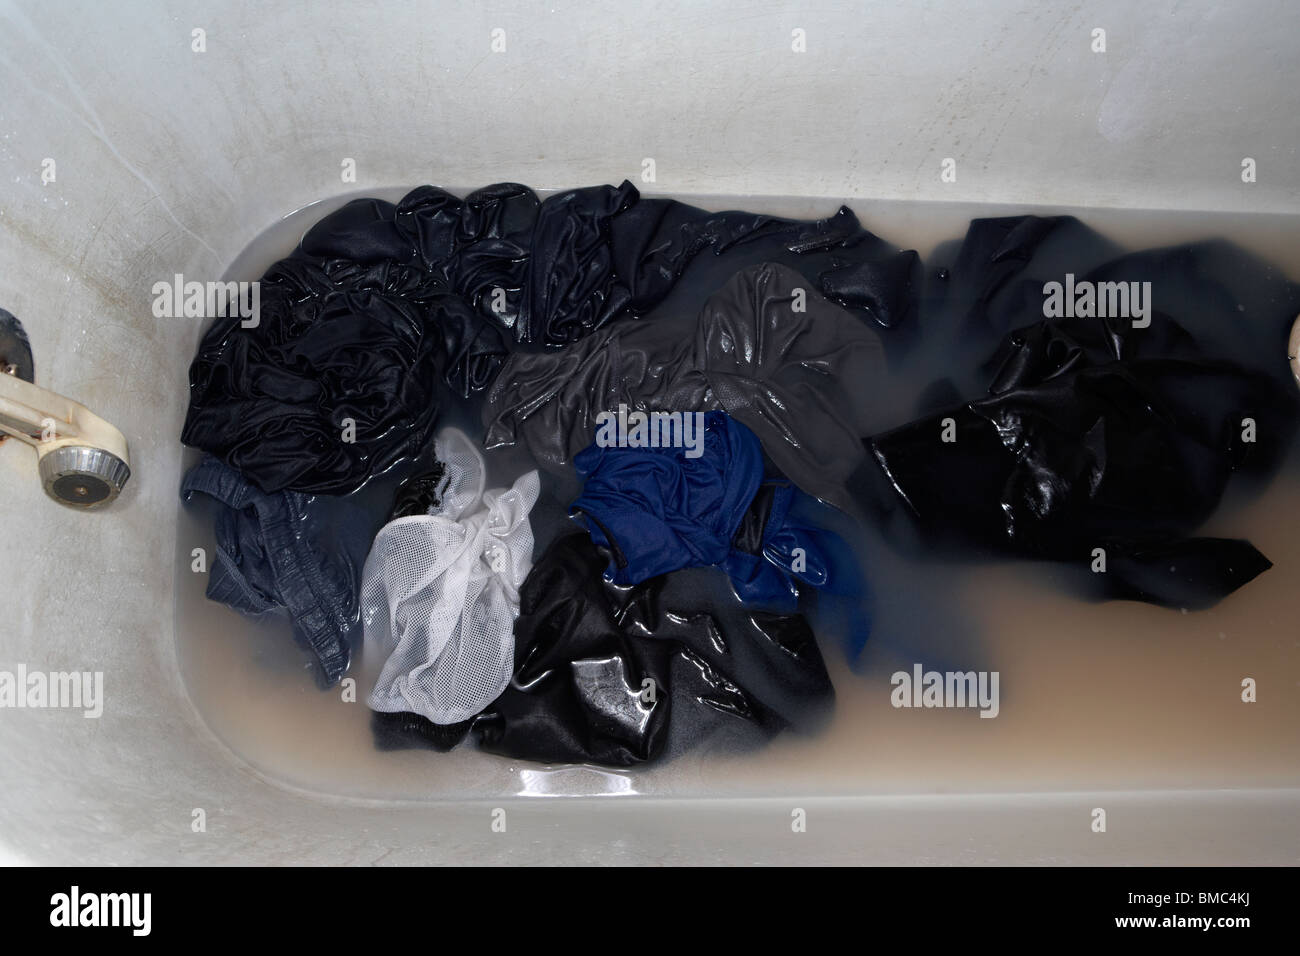 schmutzige Wäsche im Schmutzwasser in ein schmutziges Bad-Eigenschaft Bild veröffentlicht Stockfoto